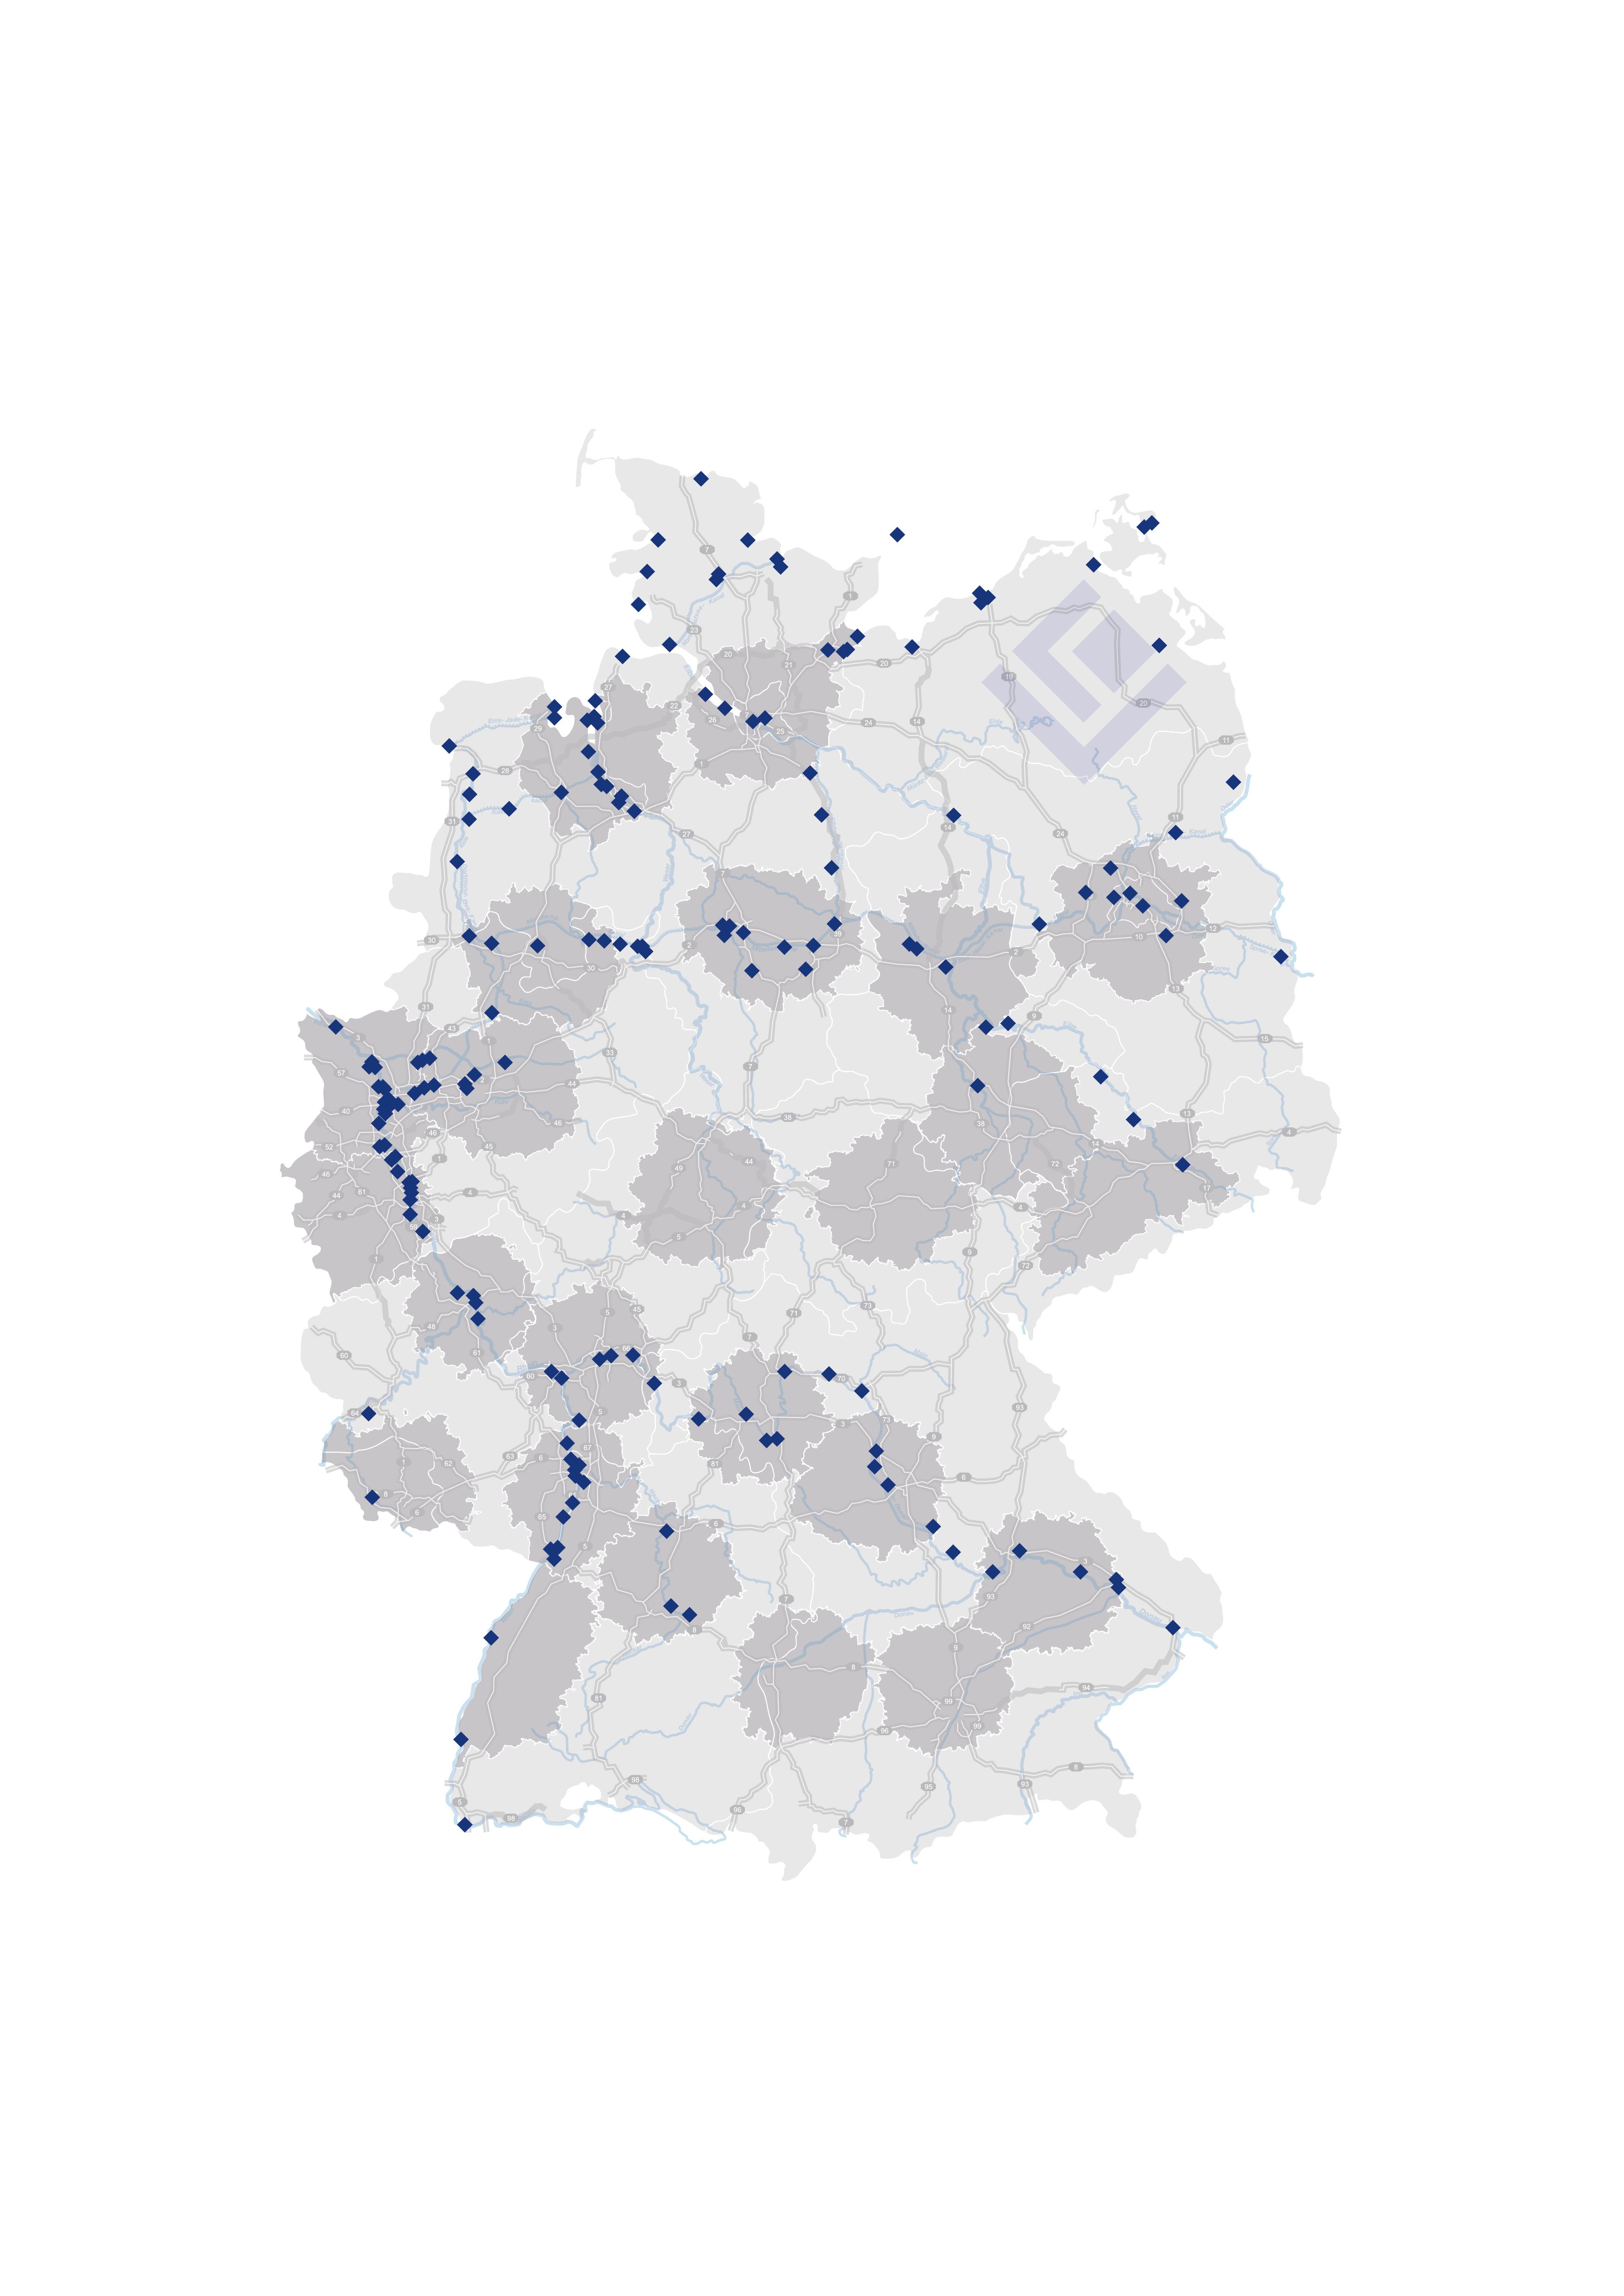 Logivest Kartengrafik Haefen Deutschland TopLogistikregionen